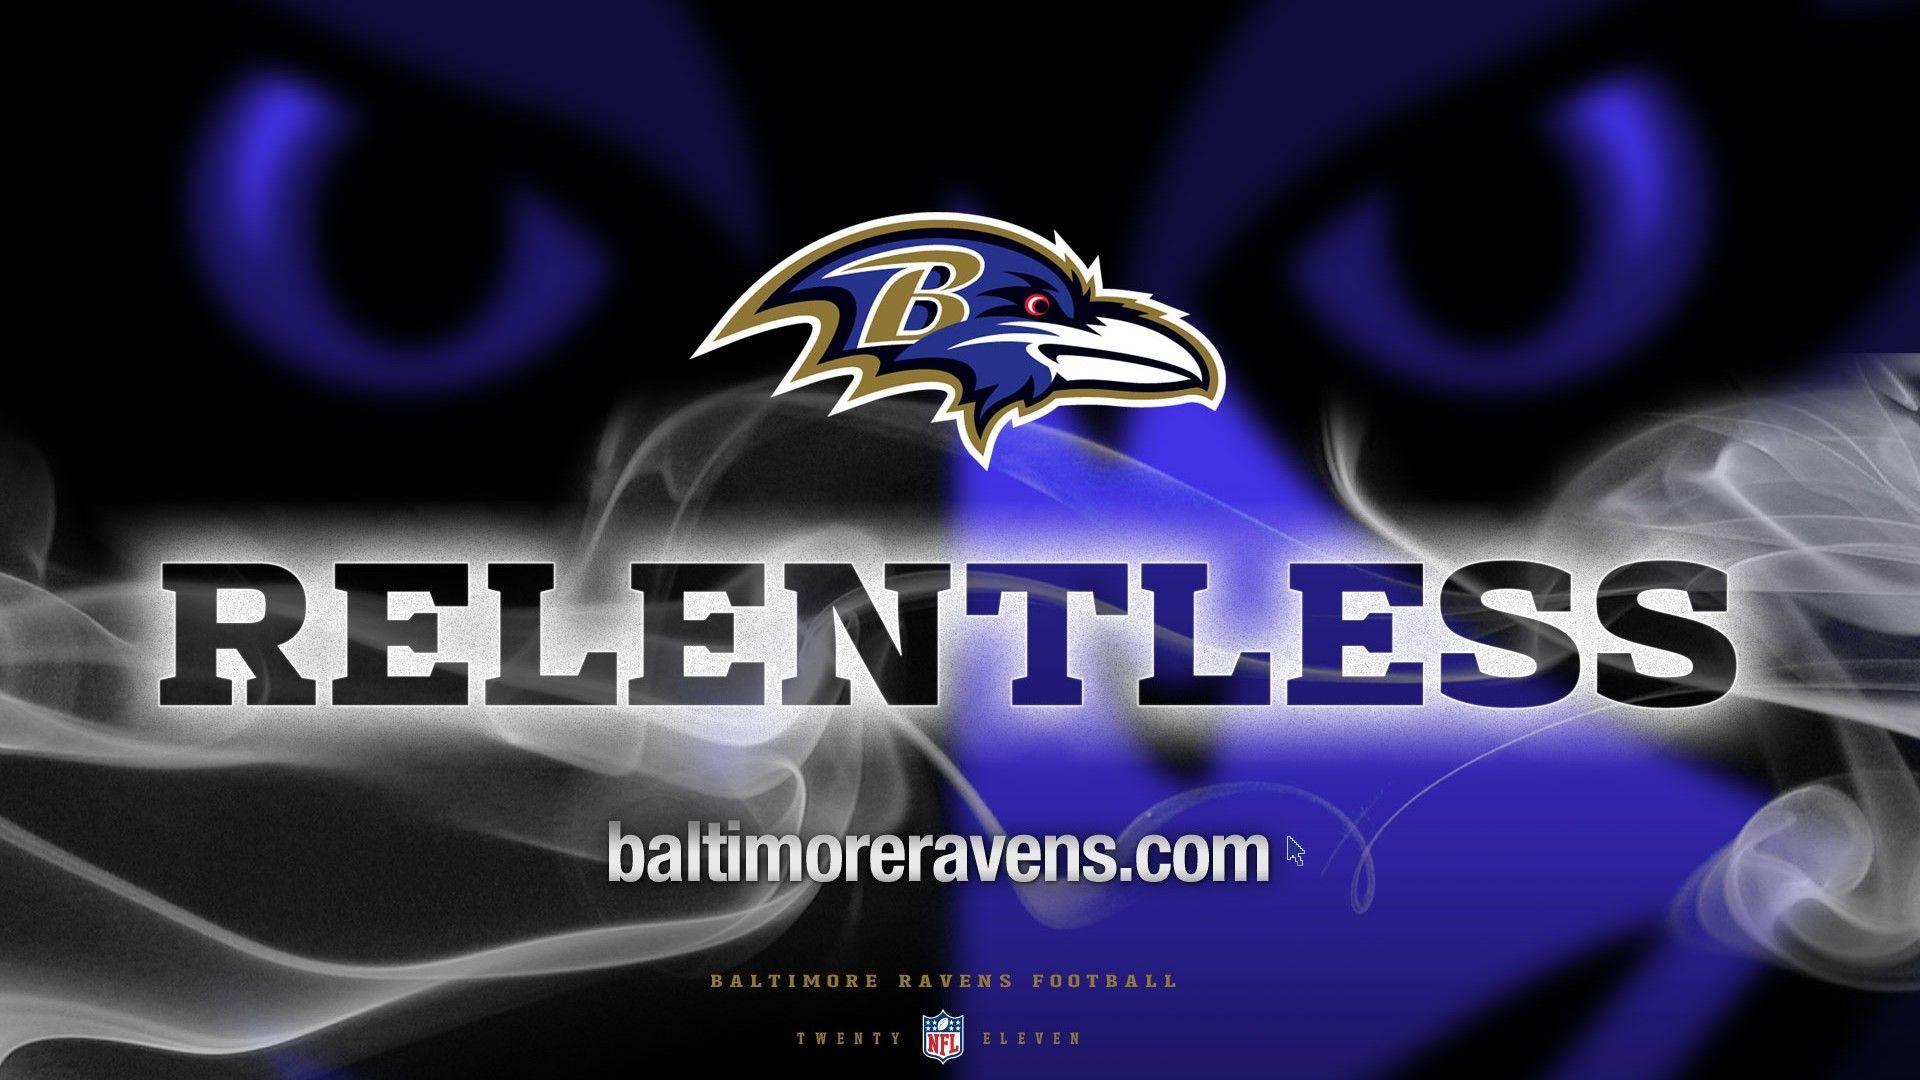 HD Desktop Wallpaper Baltimore Ravens. HD desktop, Ravens